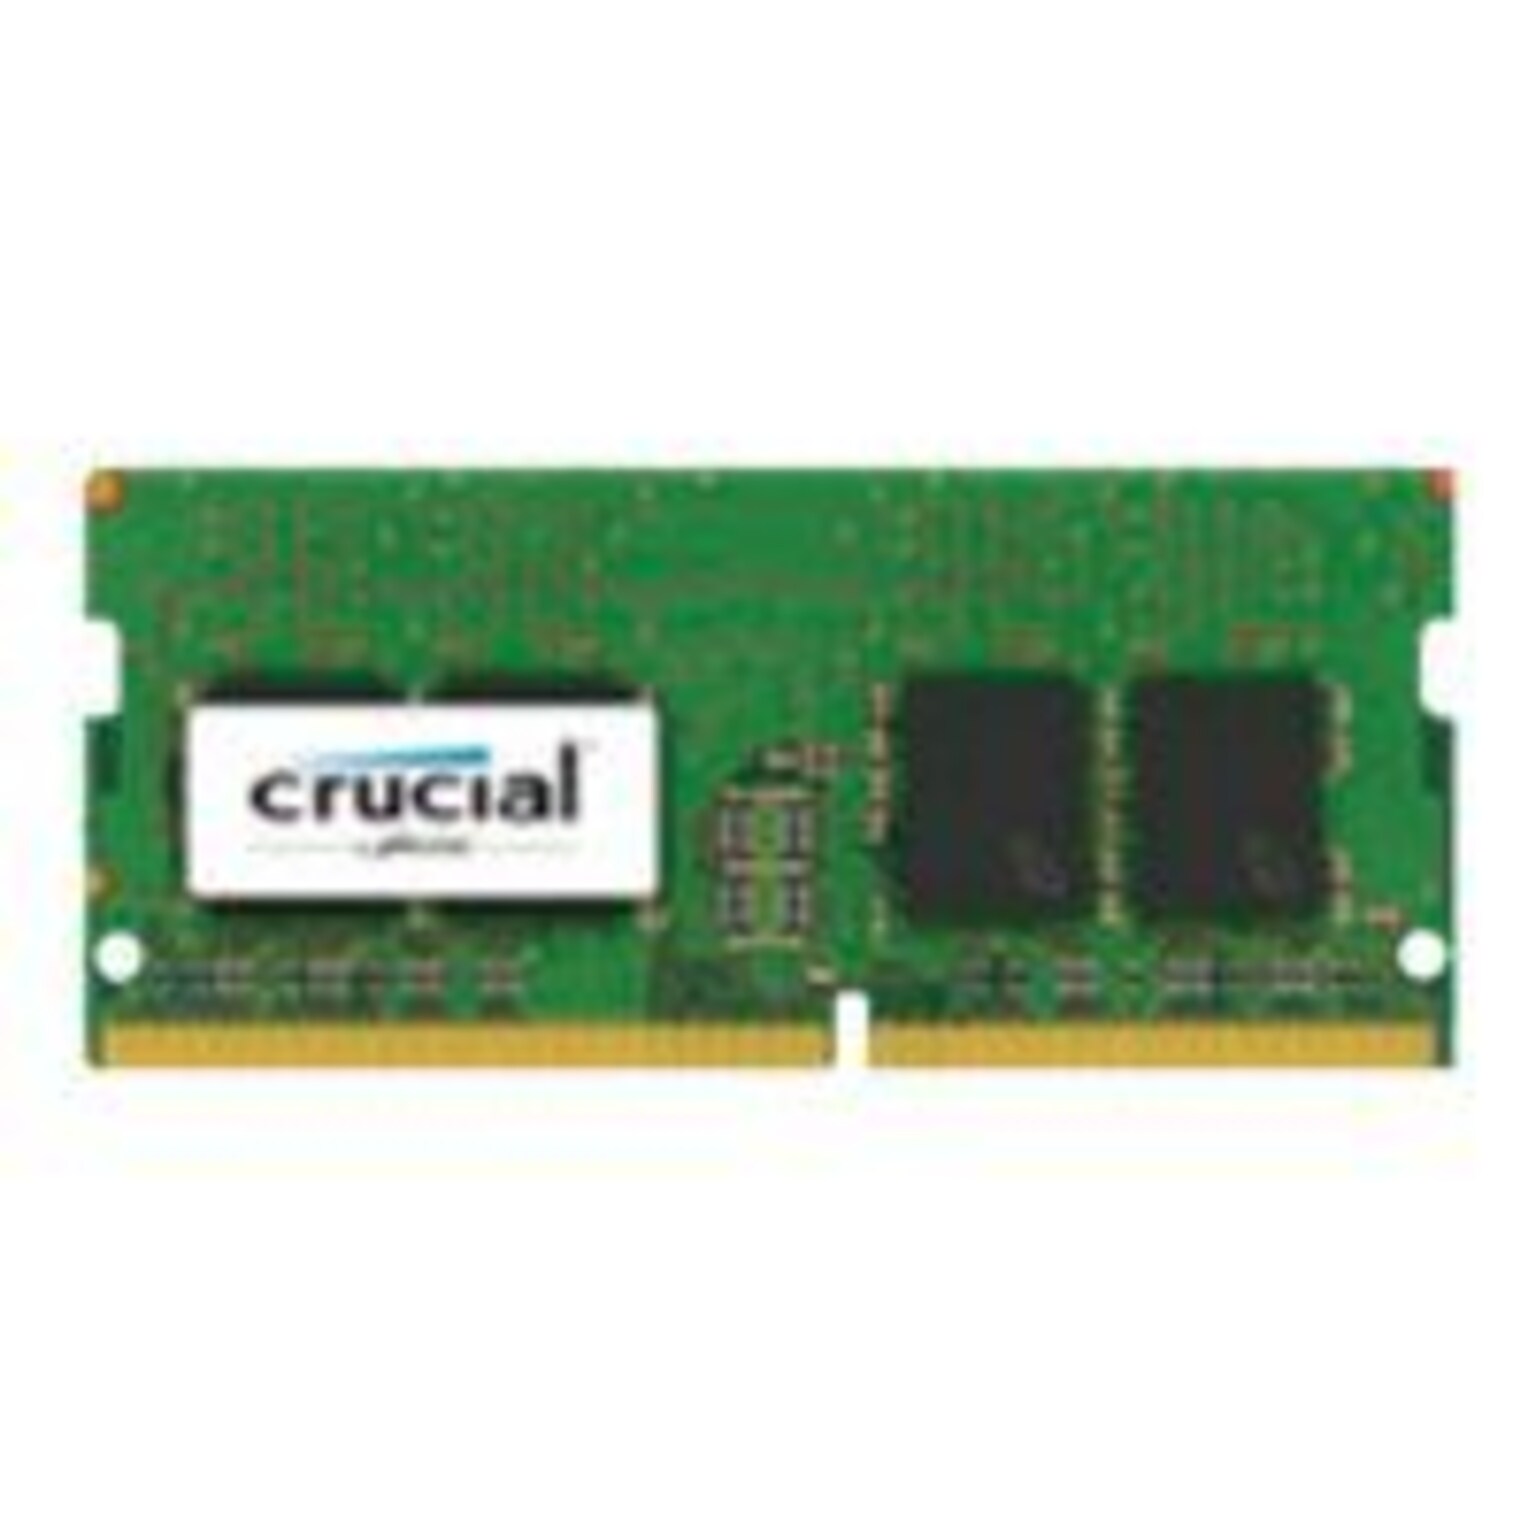 Crucial™ CT8G4SFS824A 8GB (1 x 8GB) DDR4 SDRAM SoDIMM DDR4-2400/PC4-19200  Desktop/Laptop RAM Module | Quill.com